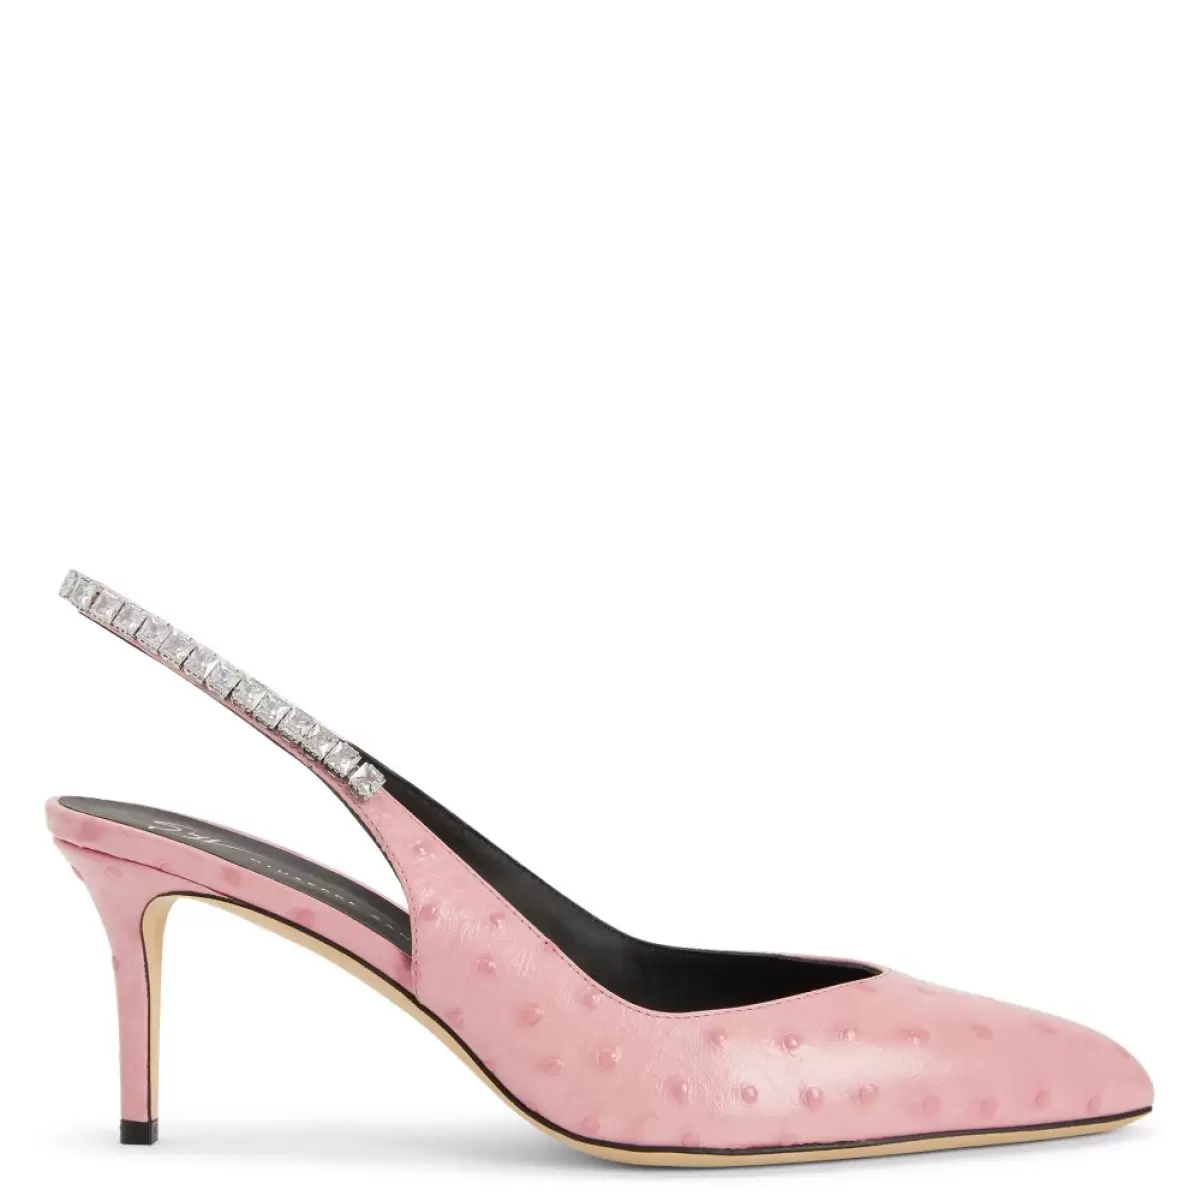 Rachyl Zapatos De Salón Giuseppe Zanotti Mujer Rosa